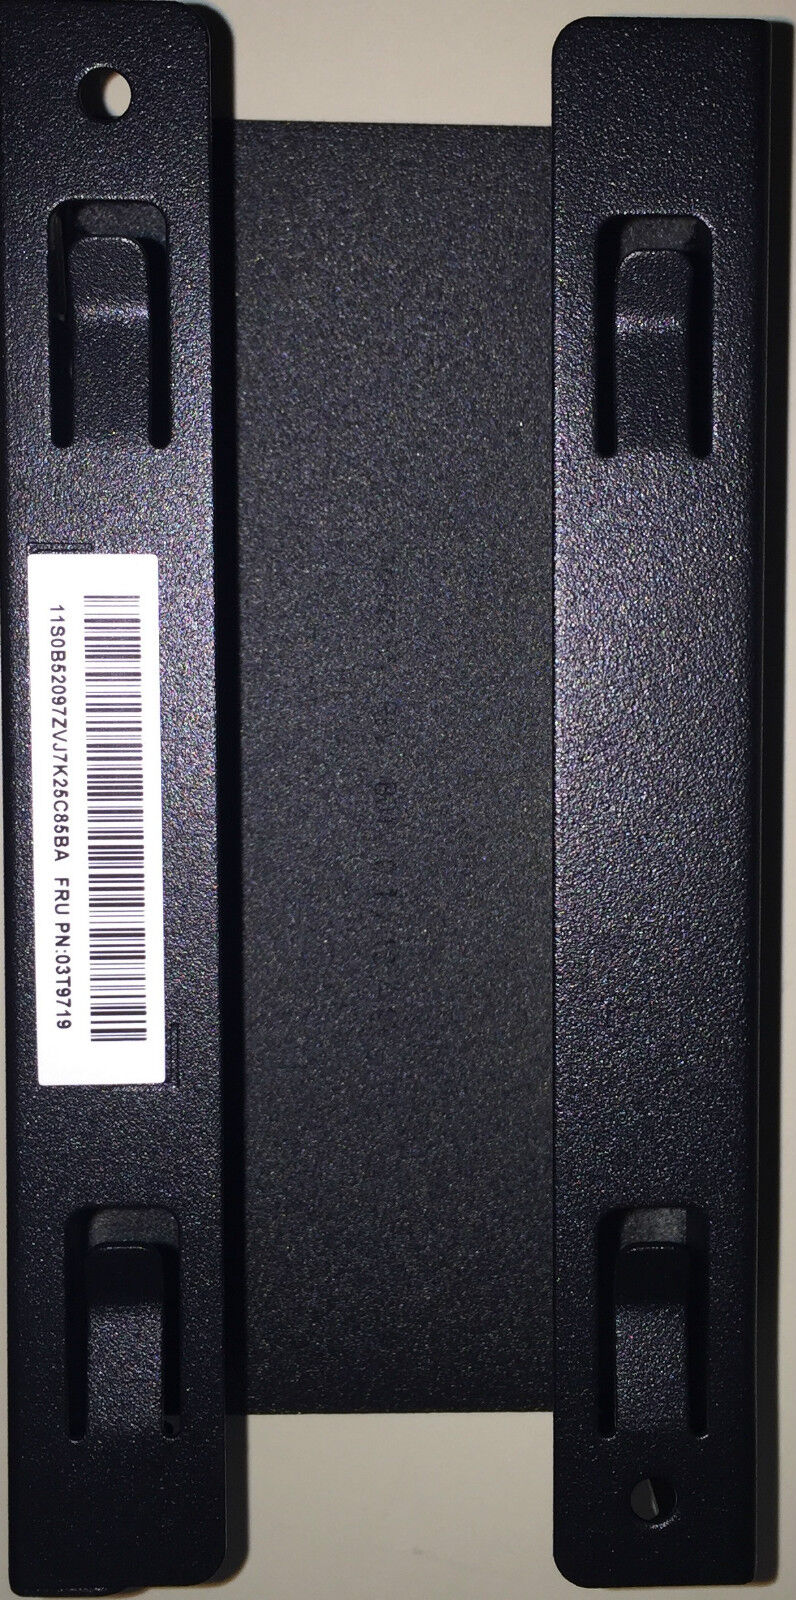 Lenovo Mounting Bracket for Power Adapter - Black New OEM Never Used